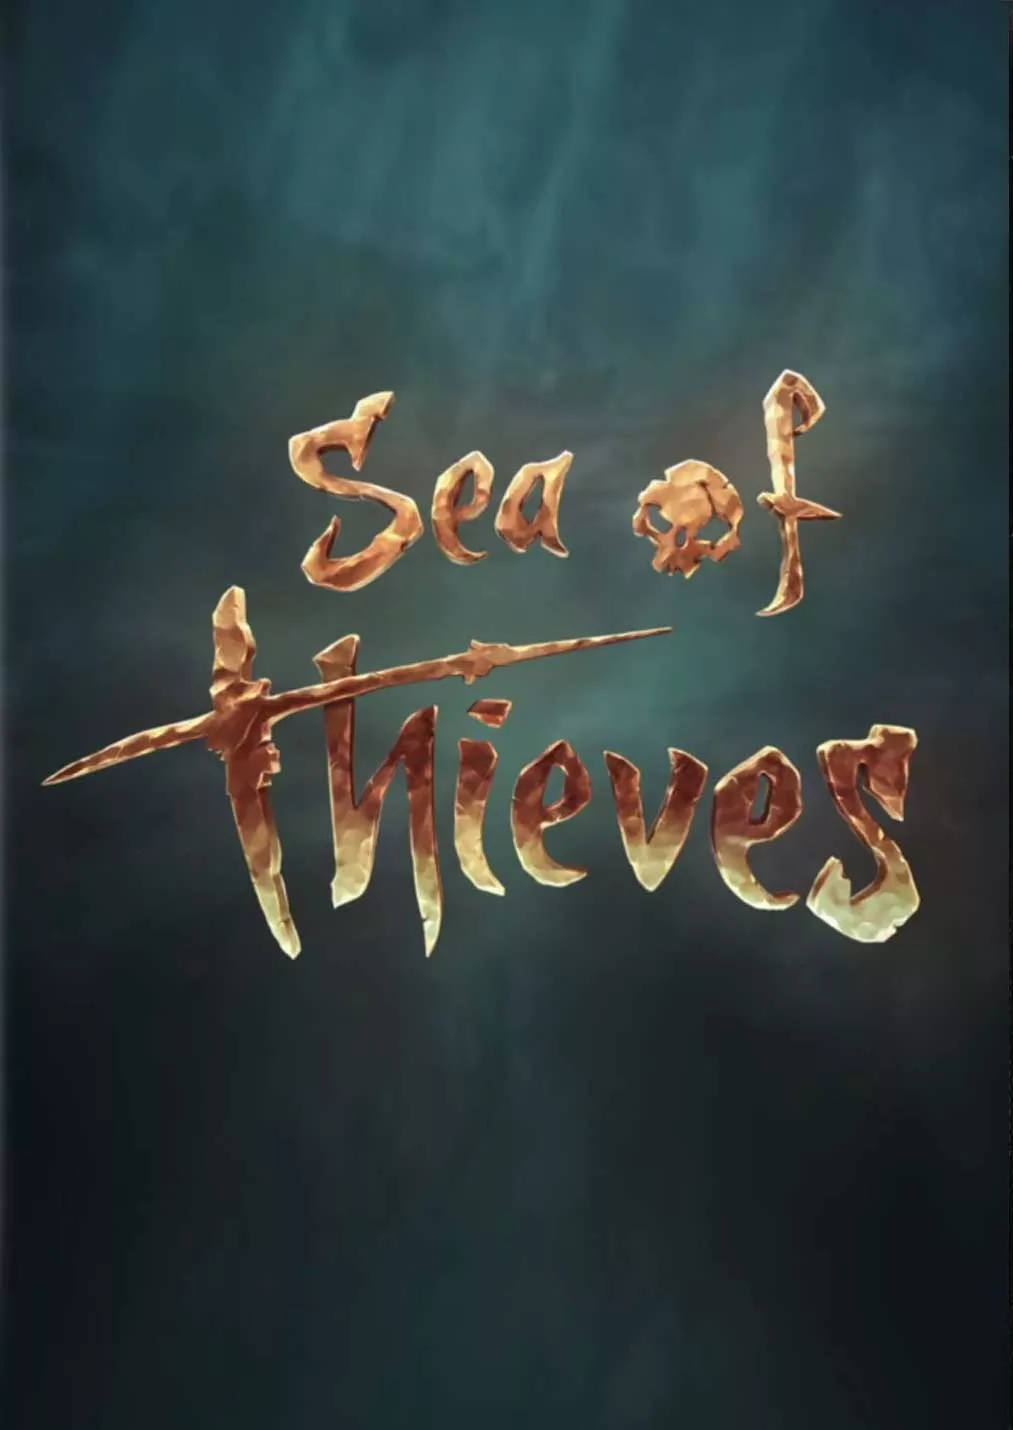 盗贼之海/ 贼海/Sea of Thieves